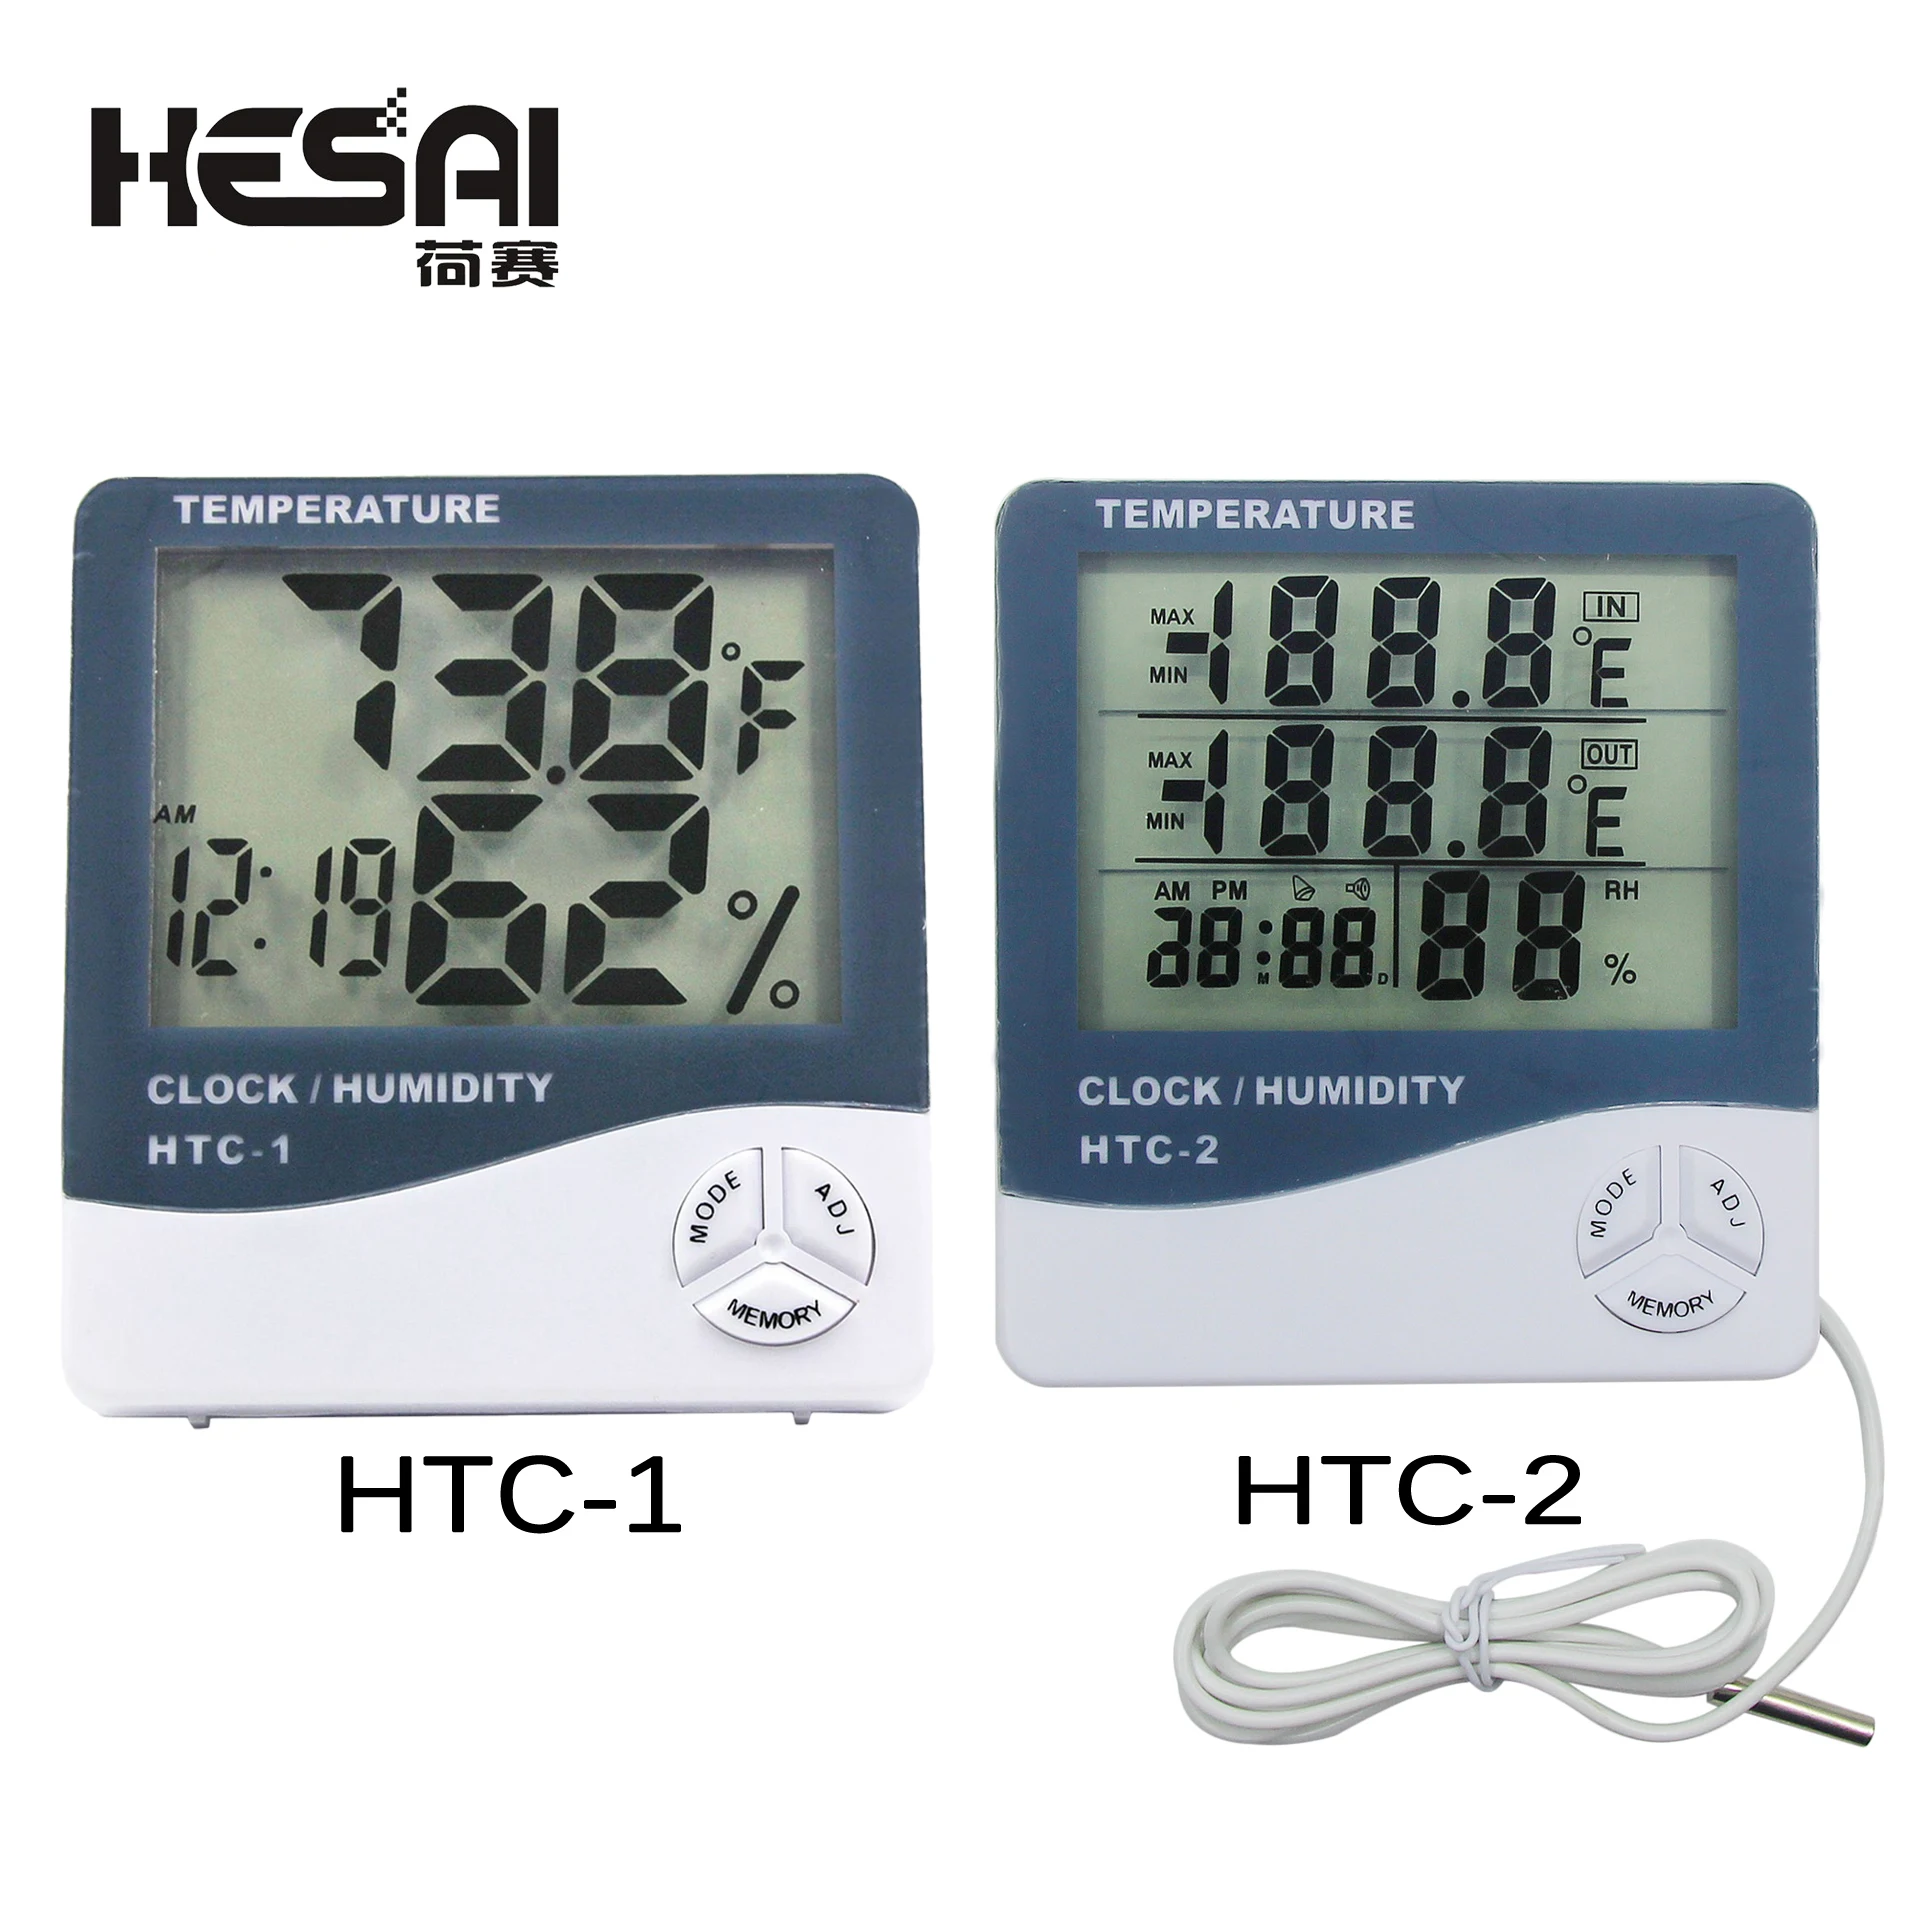 

LCD elettronico digitale temperatura misuratore di umidità termometro igrometro interno esterno stazione meteorologica orologio